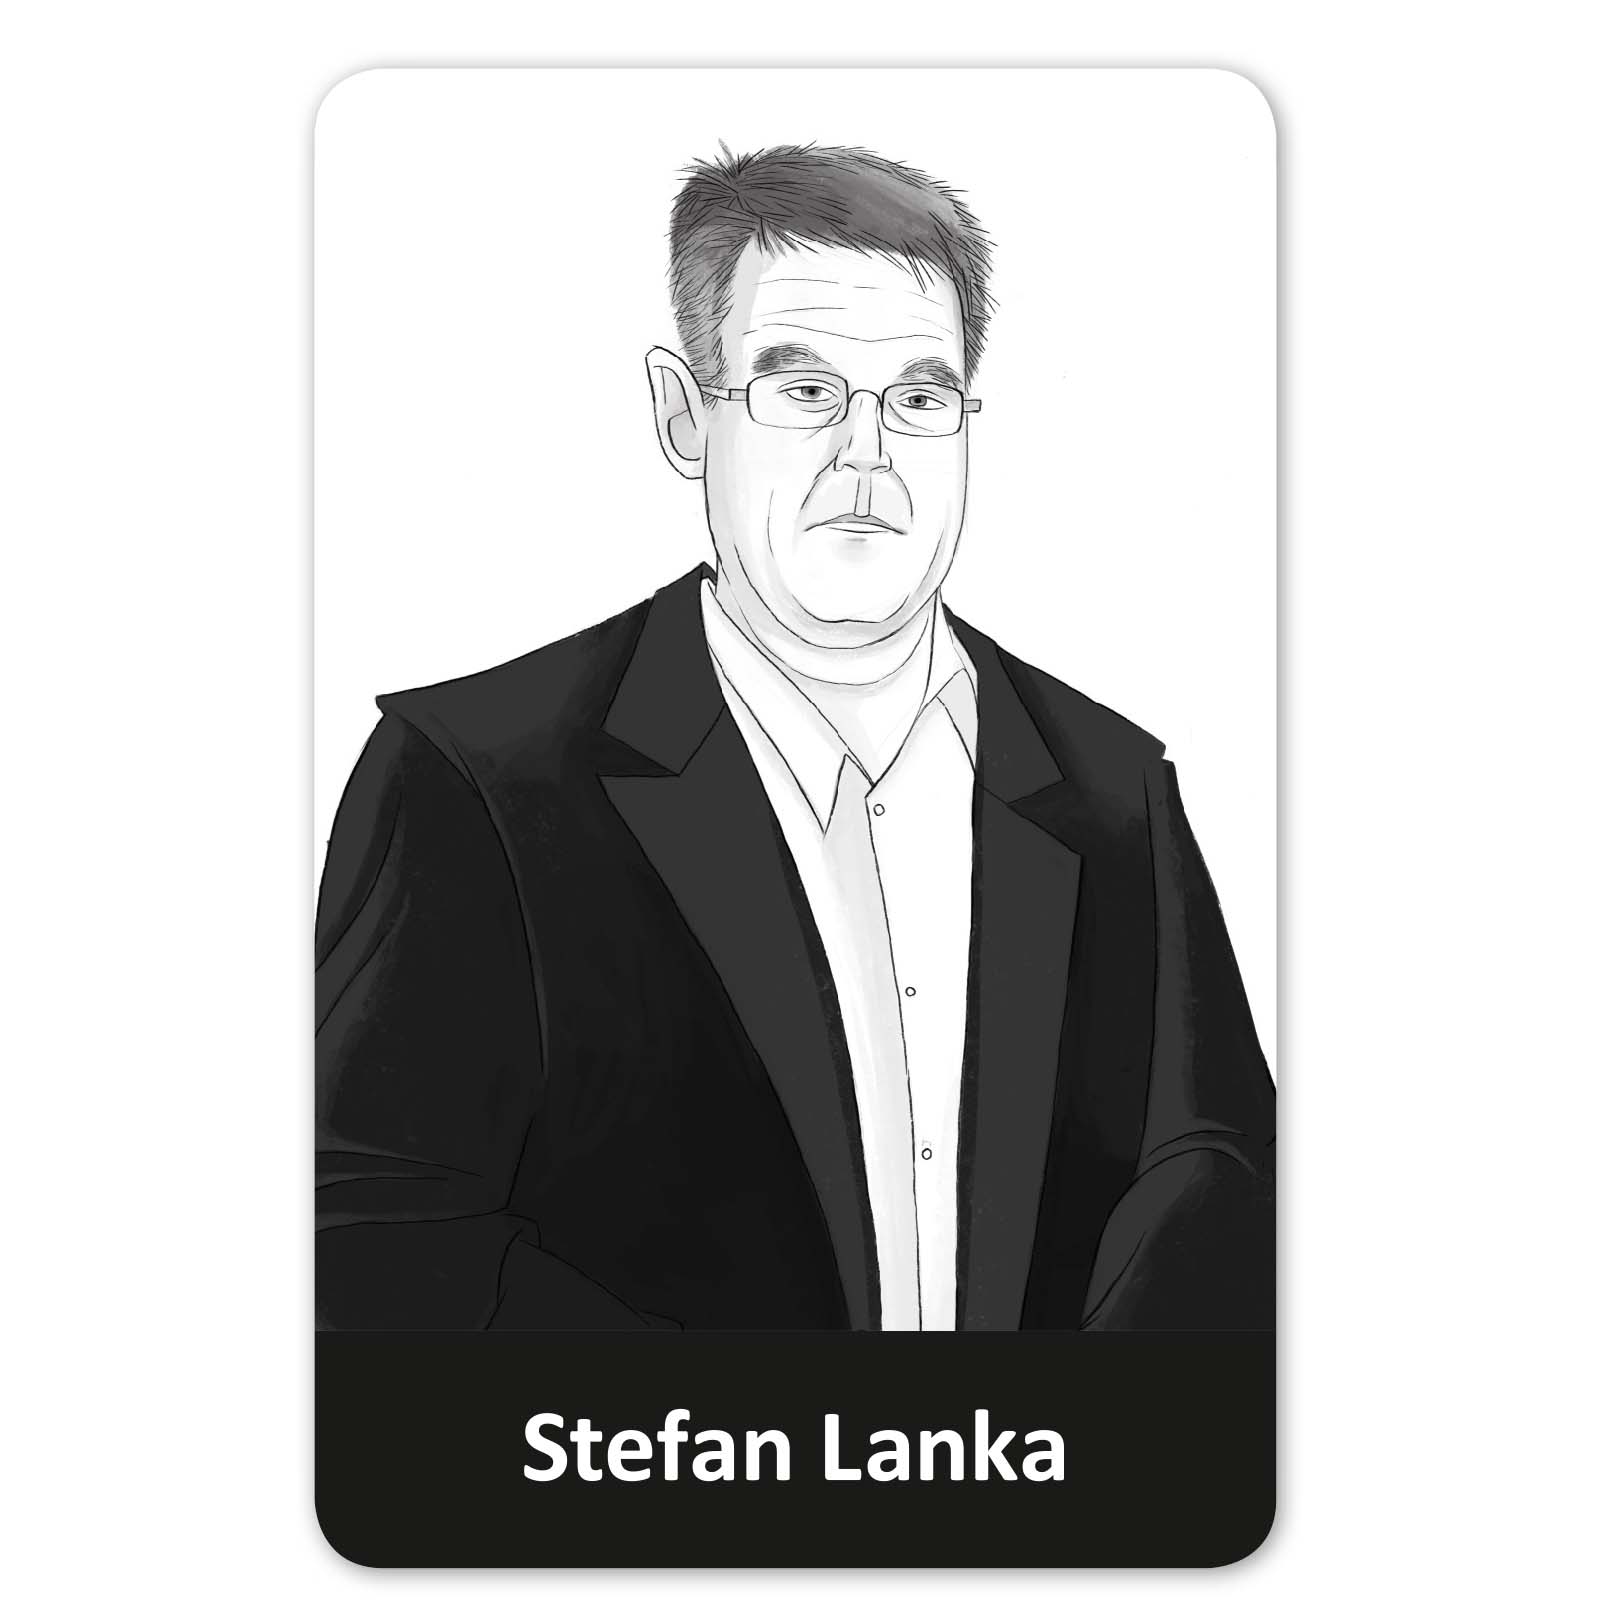 Stefan Lanka